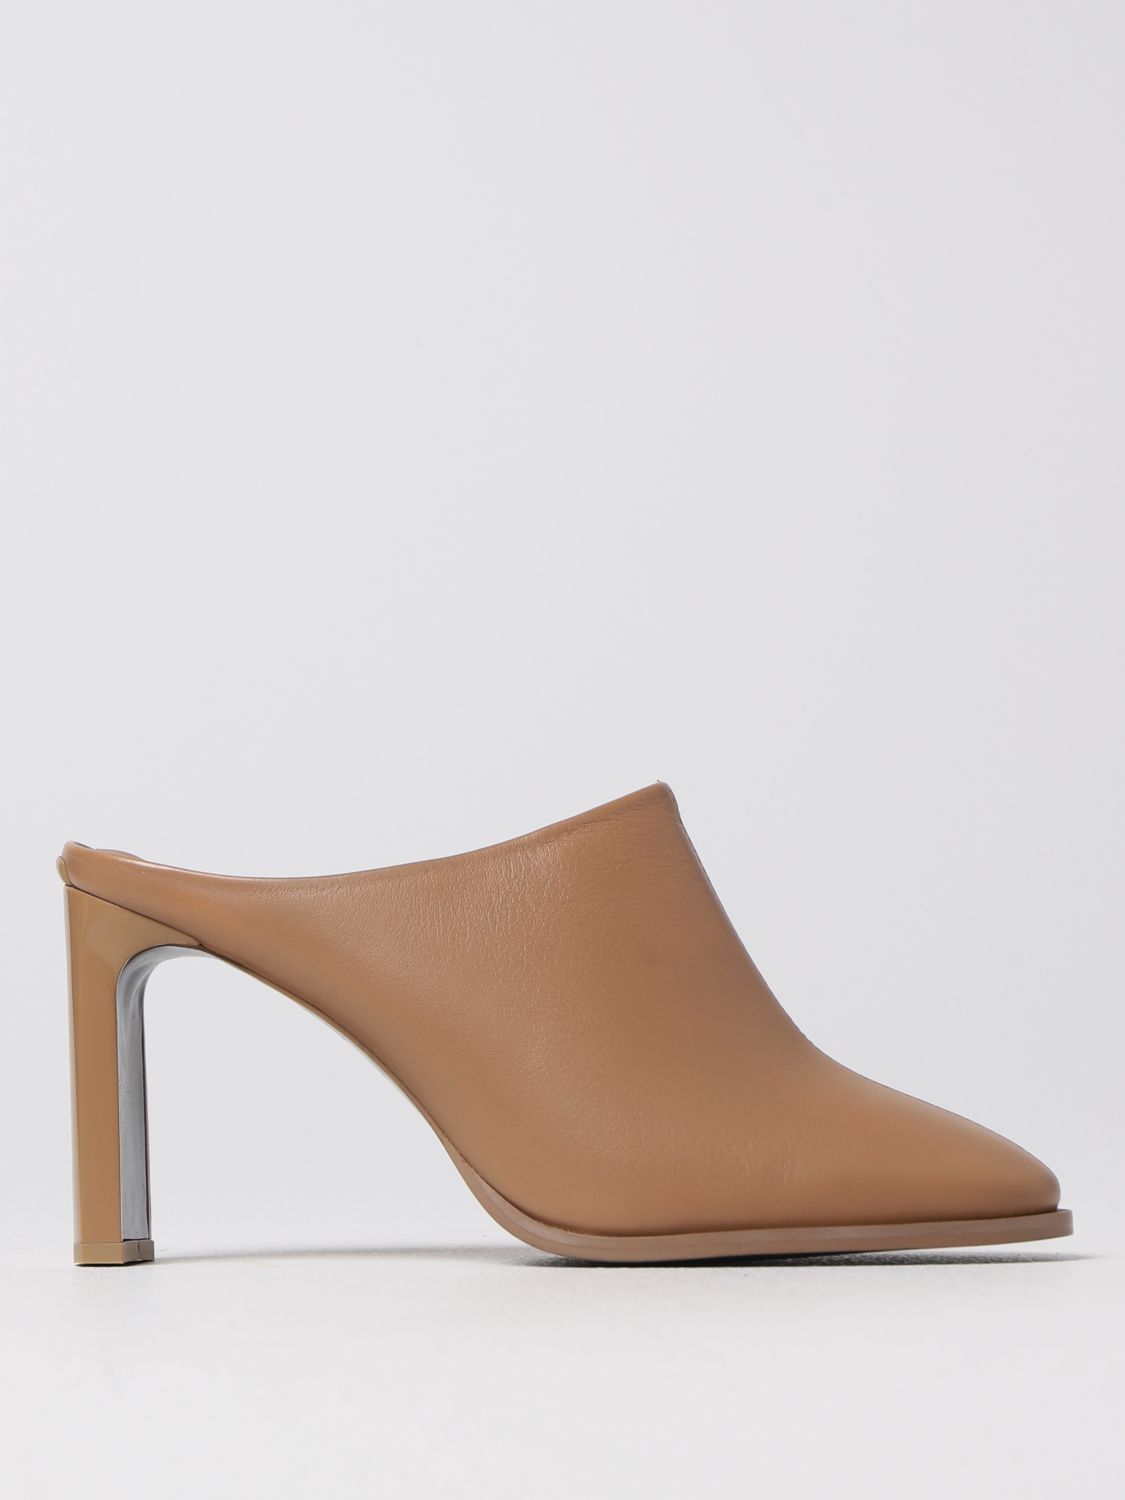 Startpunt Sophie Ale CALVIN KLEIN: high heel shoes for woman - Beige | Calvin Klein high heel  shoes HW0HW01542 online on GIGLIO.COM